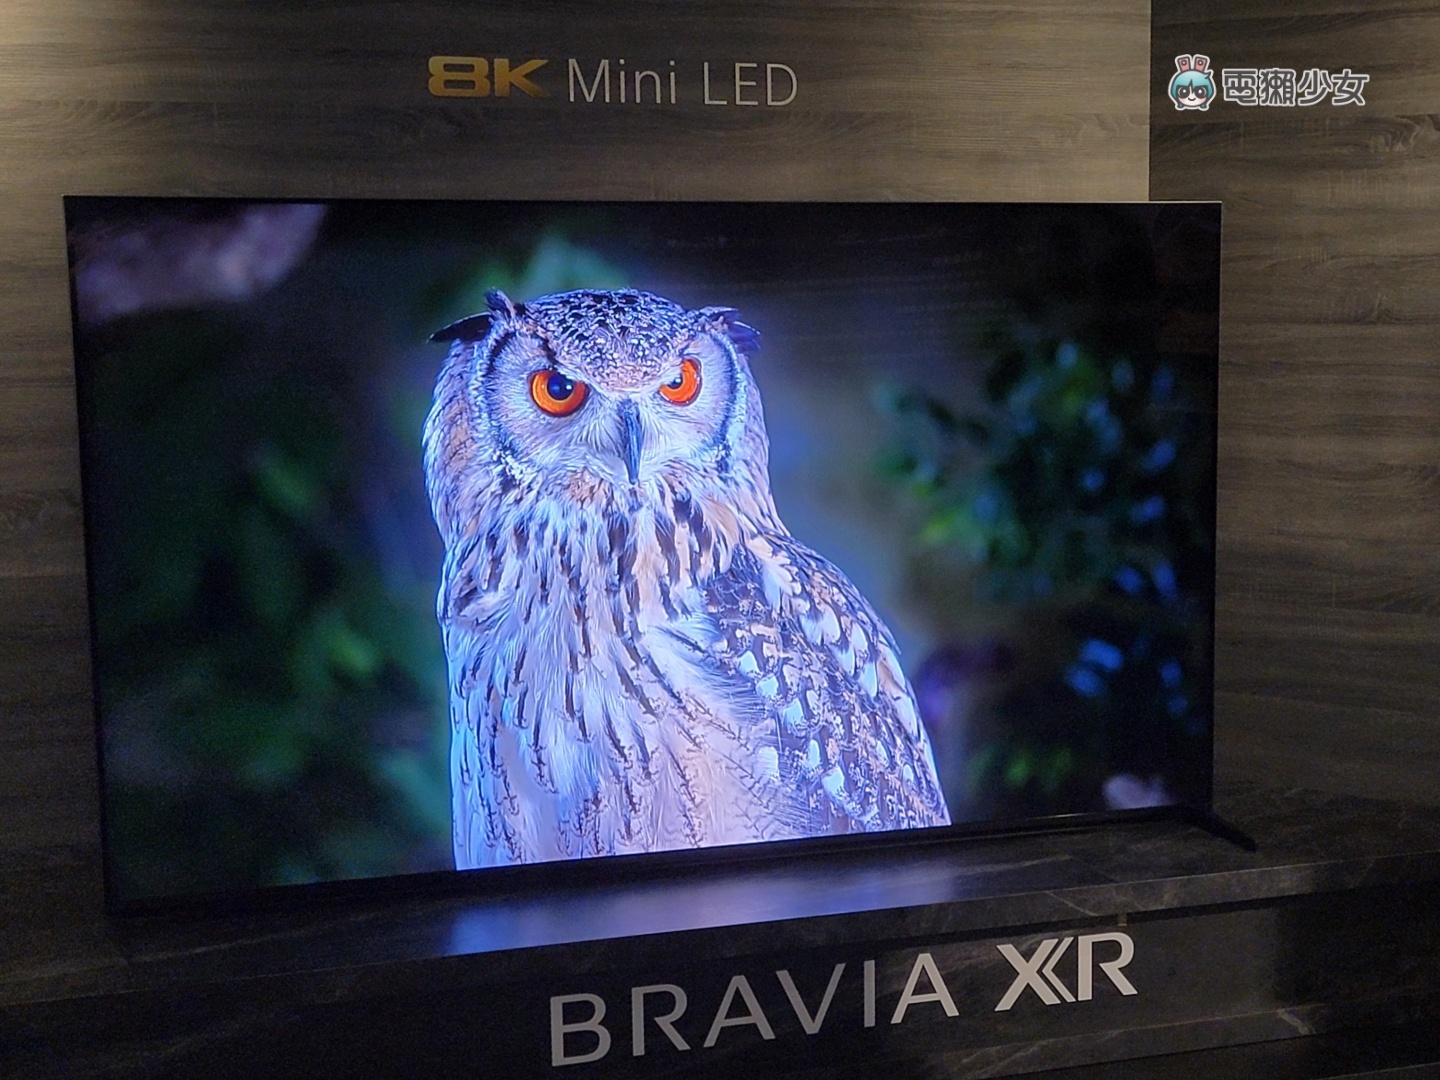 出門｜Sony BRAVIA XR 電視全系列皆為 PS5 推薦機種，體驗 OLED、Mini LED 的旗艦級顯色